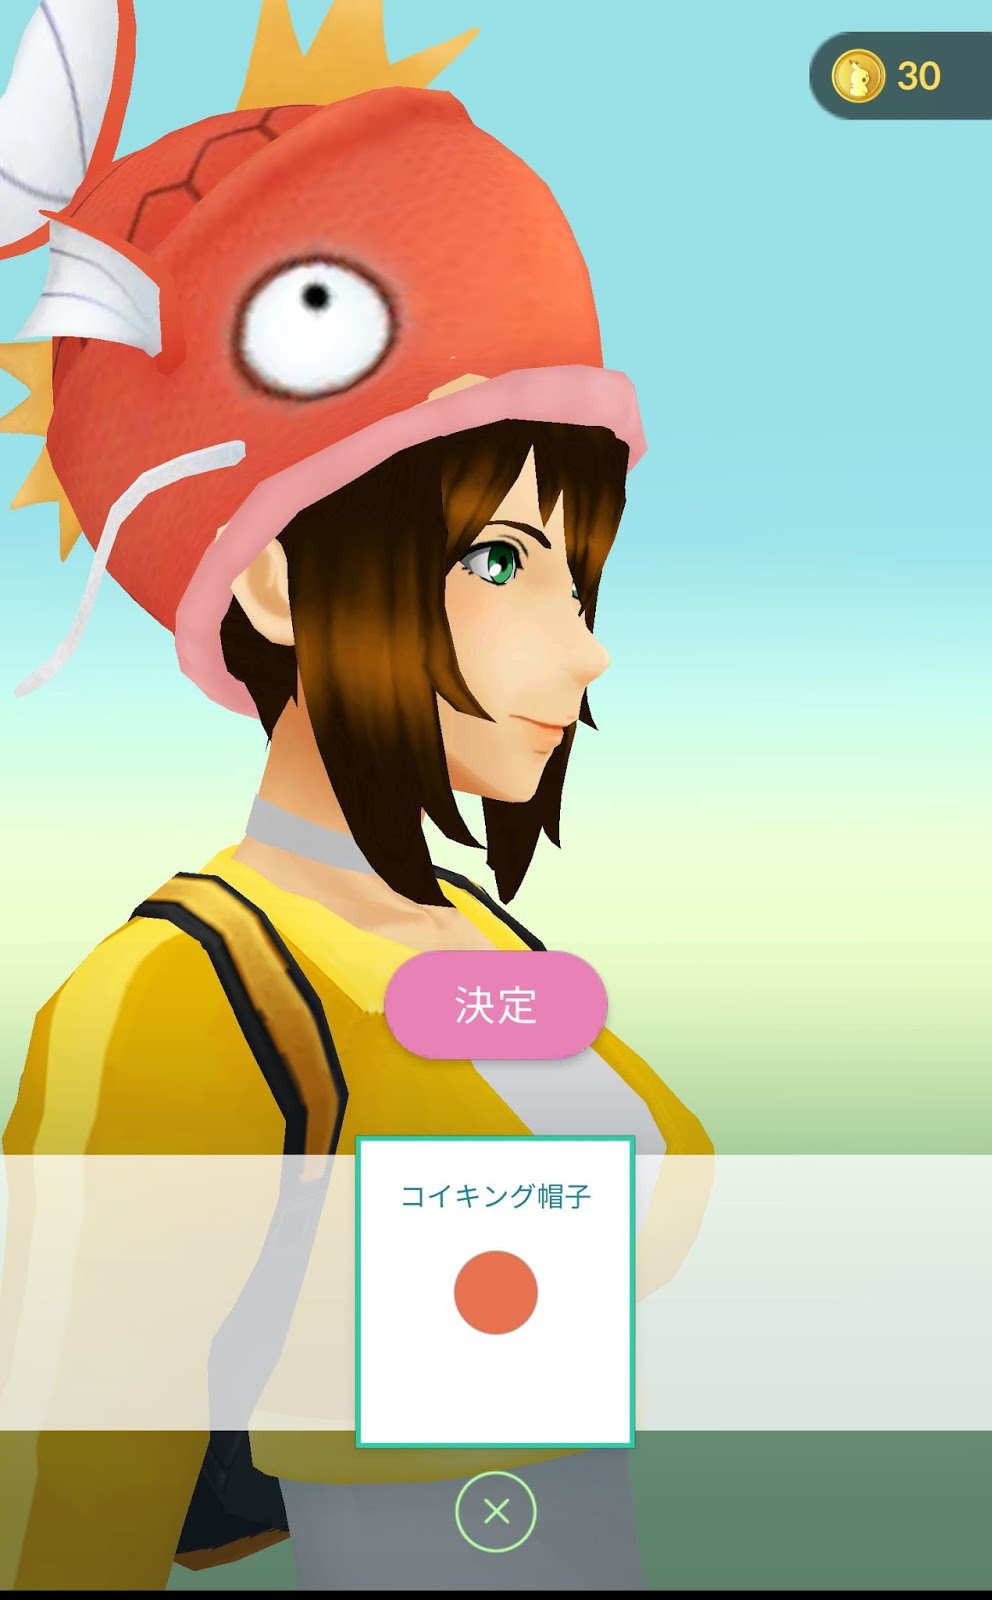 ポケモンgo日記 Pokemon Go Diary In Japan コイキング帽子は無料 ポケモンgo